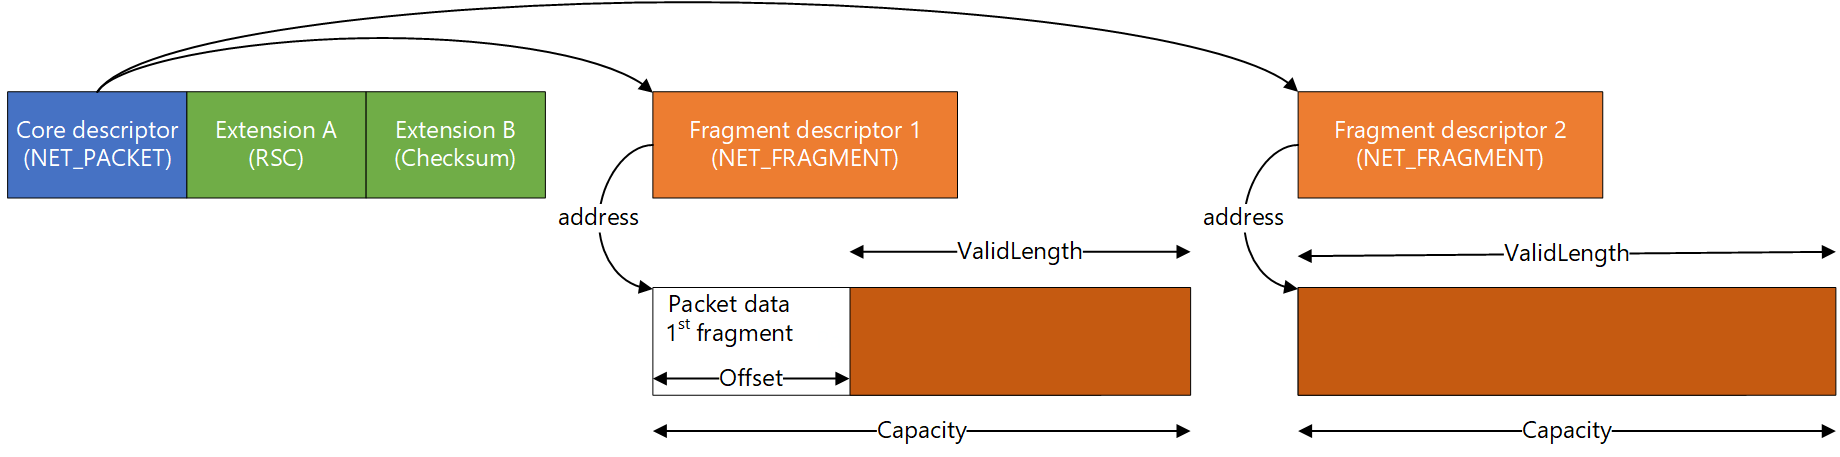 Diagrama que mostra um layout de pacote com 2 fragmentos e 2 extensões.